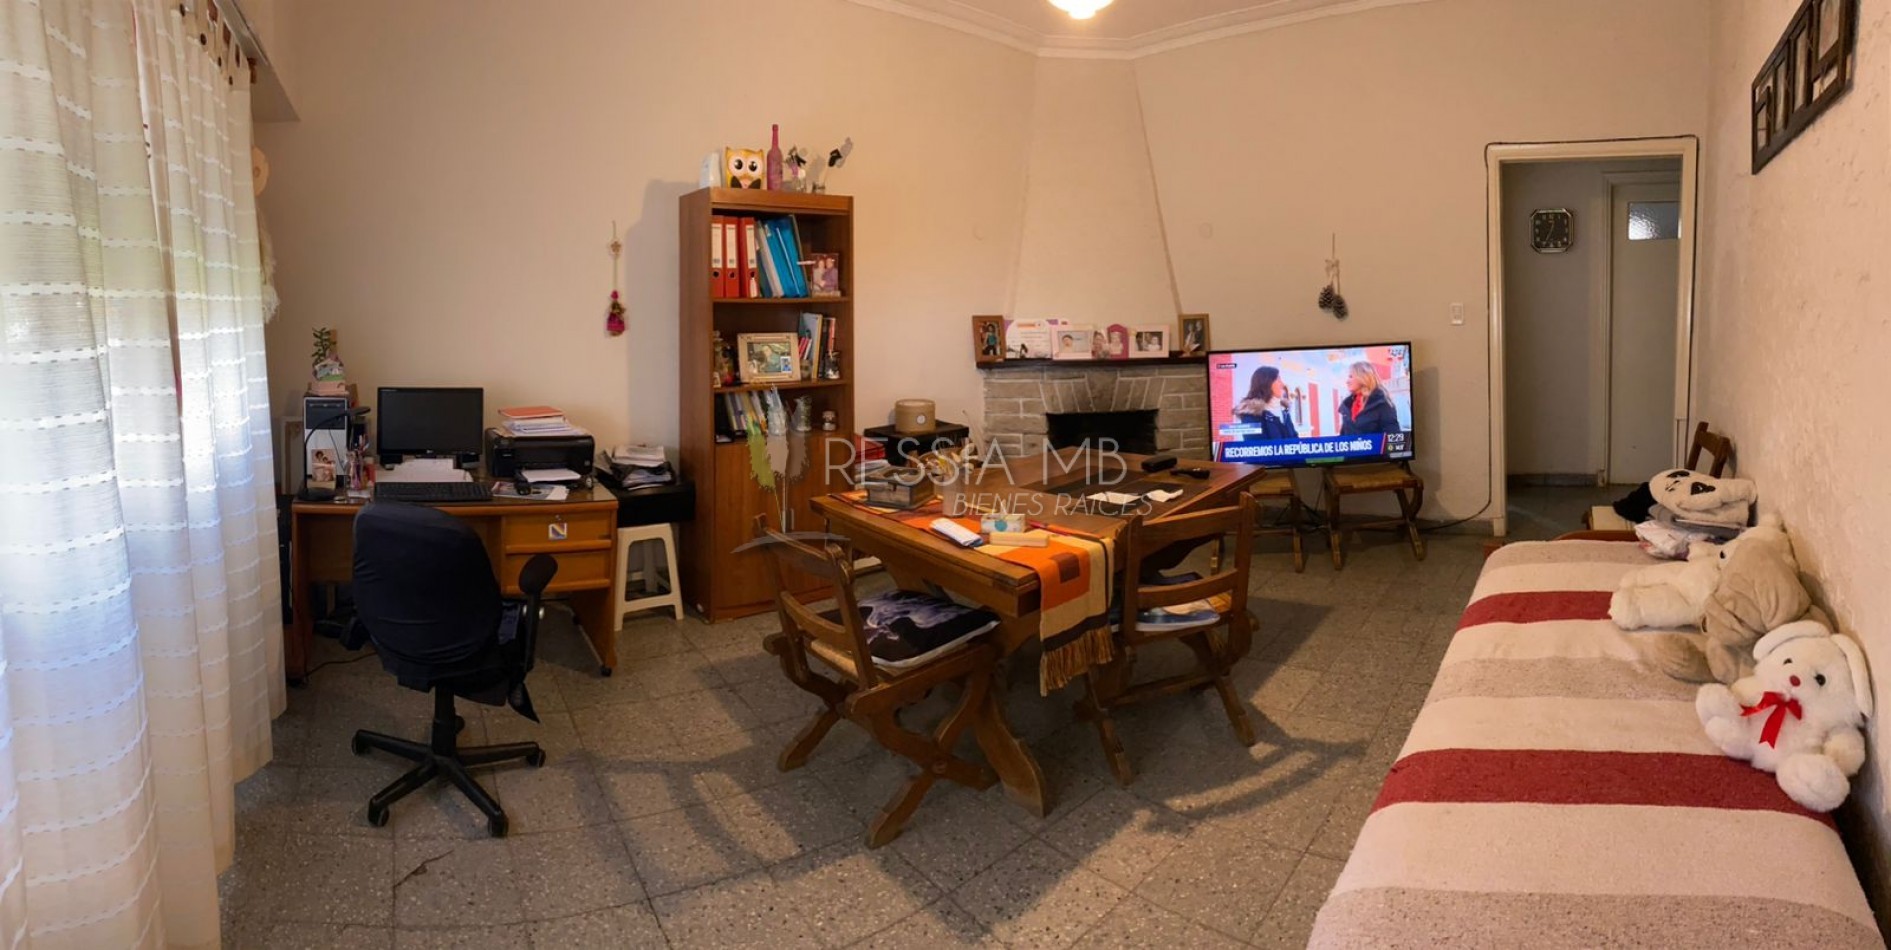 Encantadora Casa de 2 dormitorios en Venta en Mar del Plata: Ideal para Vivienda Permanente